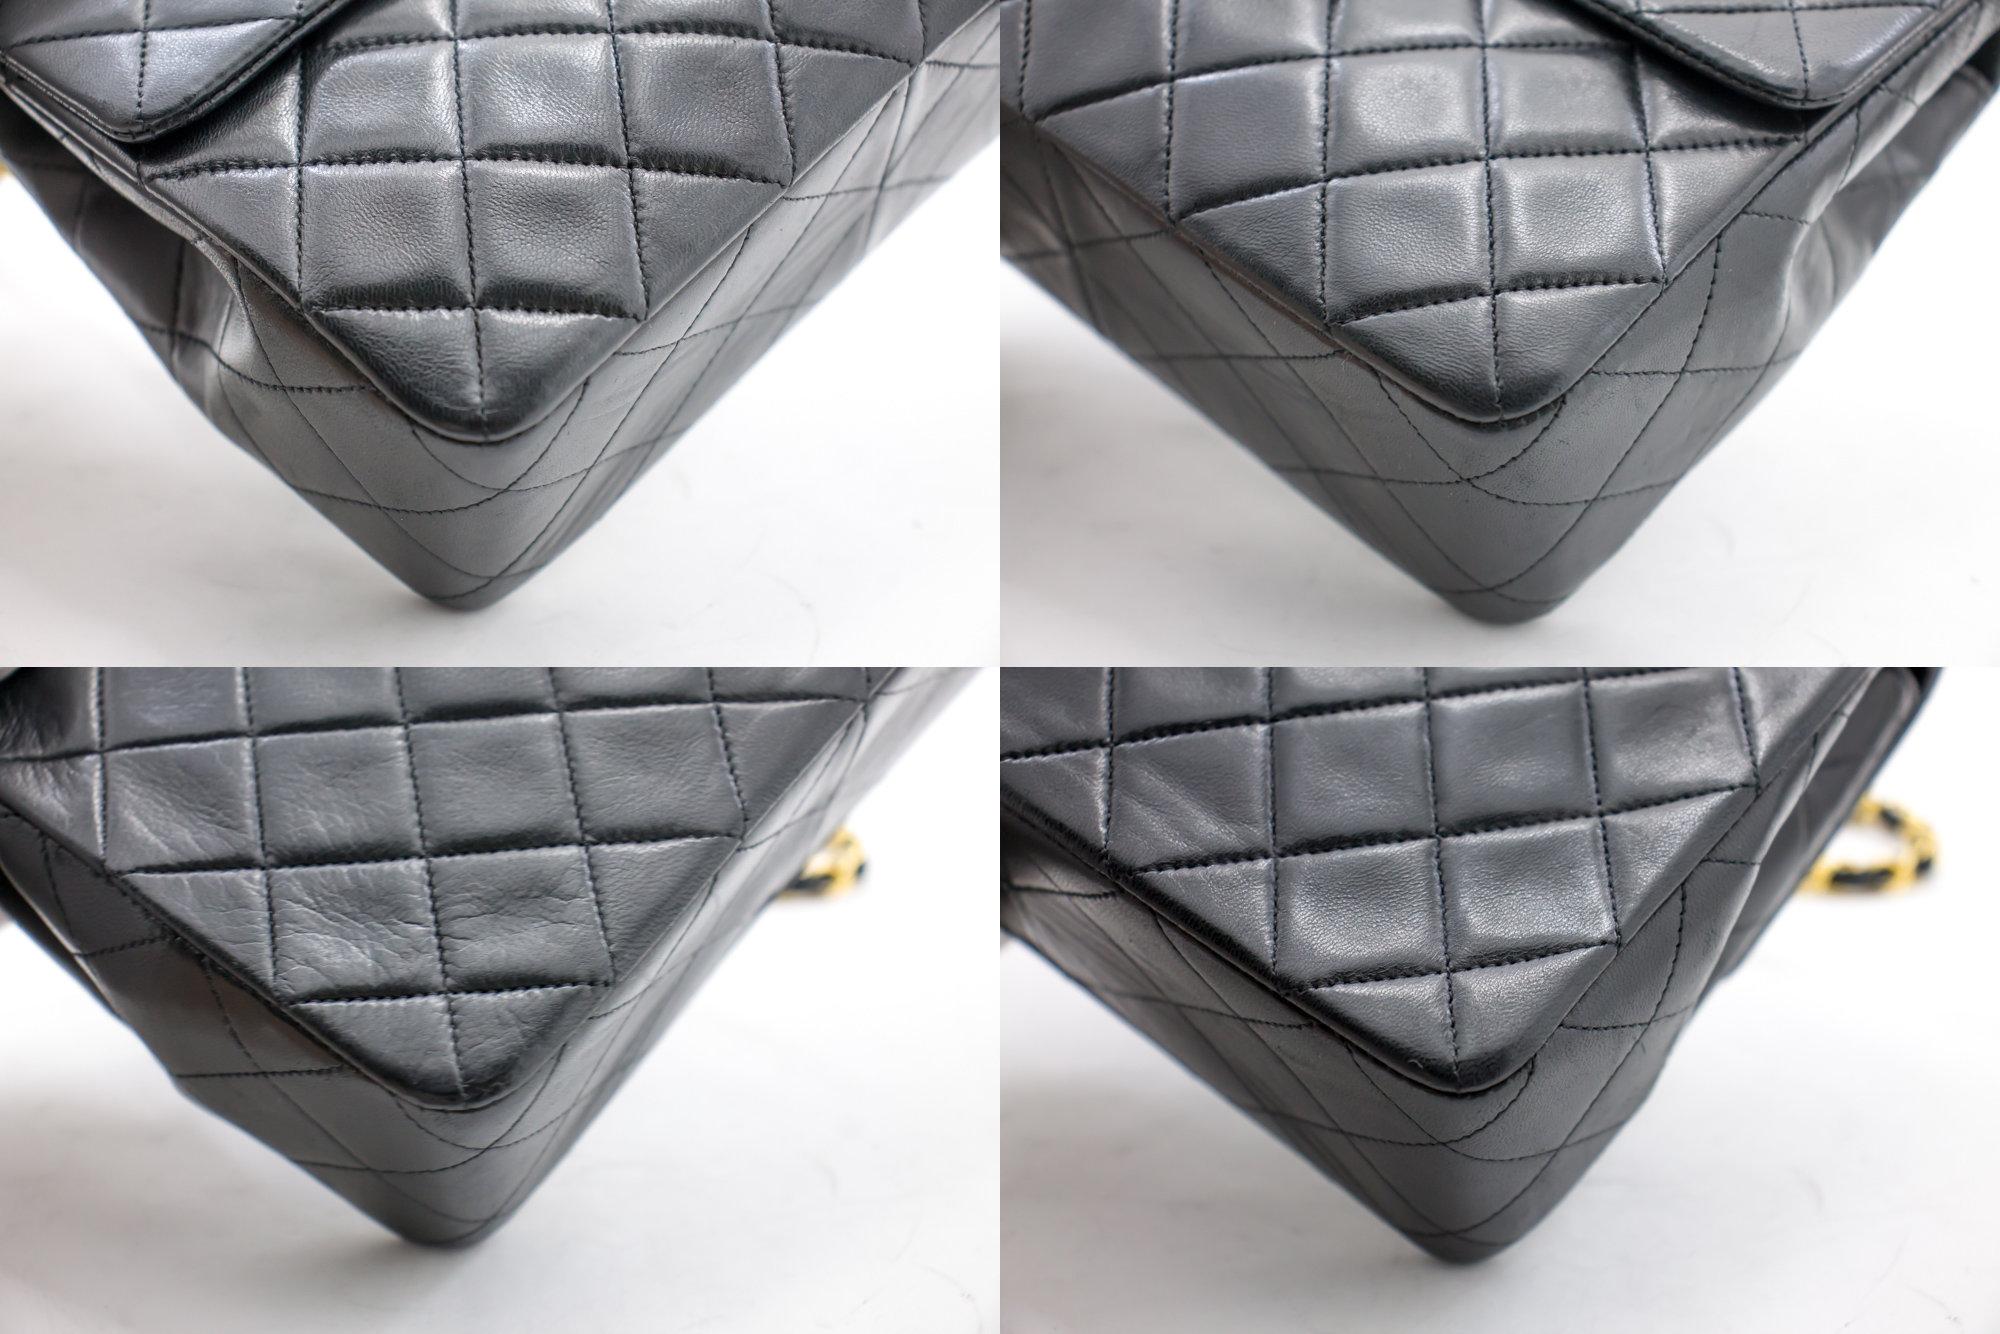 CHANEL Mini Square Small Chain Shoulder Crossbody Bag Black Purse 2